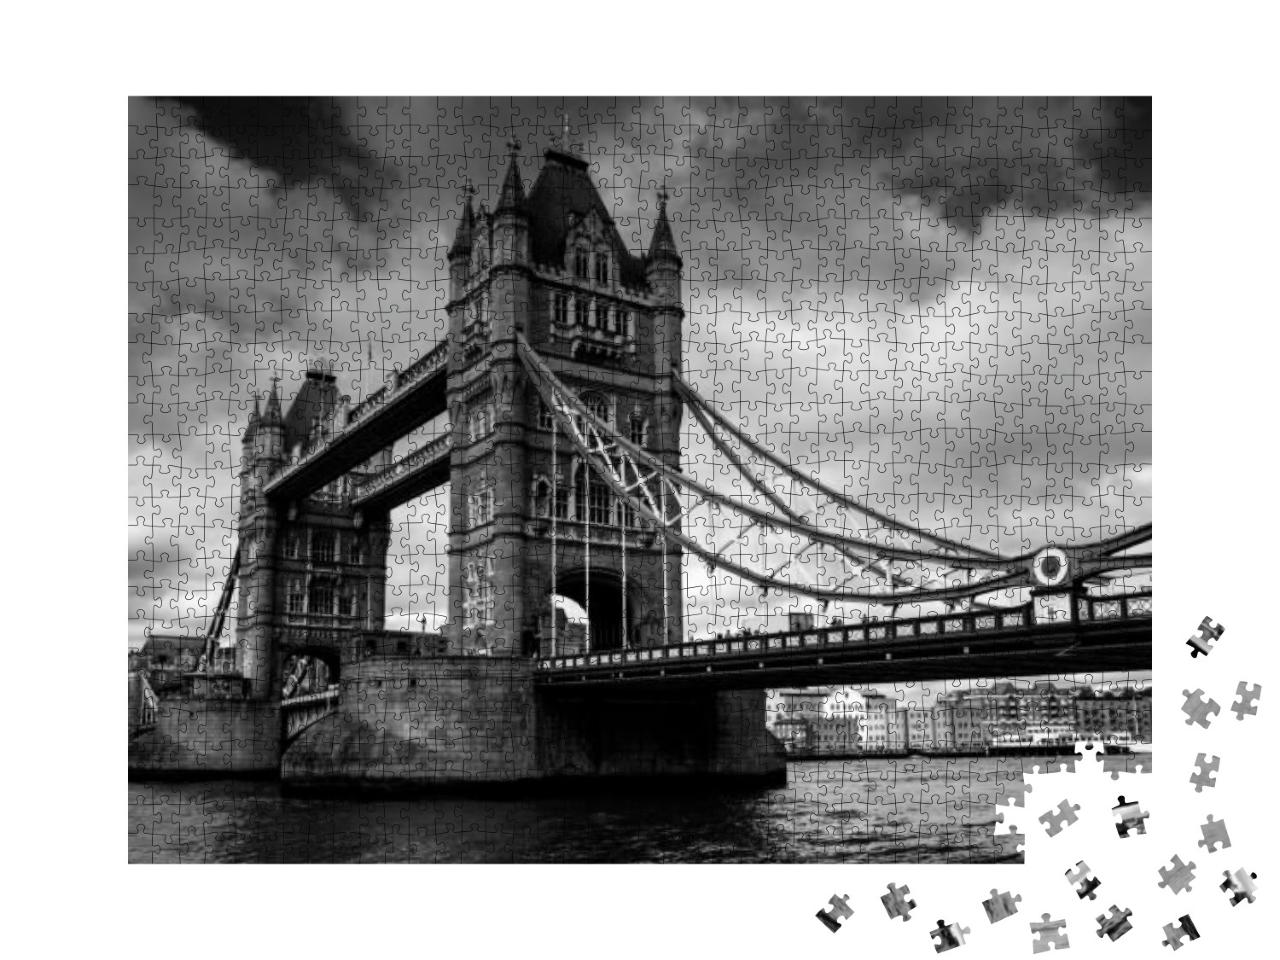 Puzzle 1000 Teile „Tower Bridge in London, schwarz-weiß“